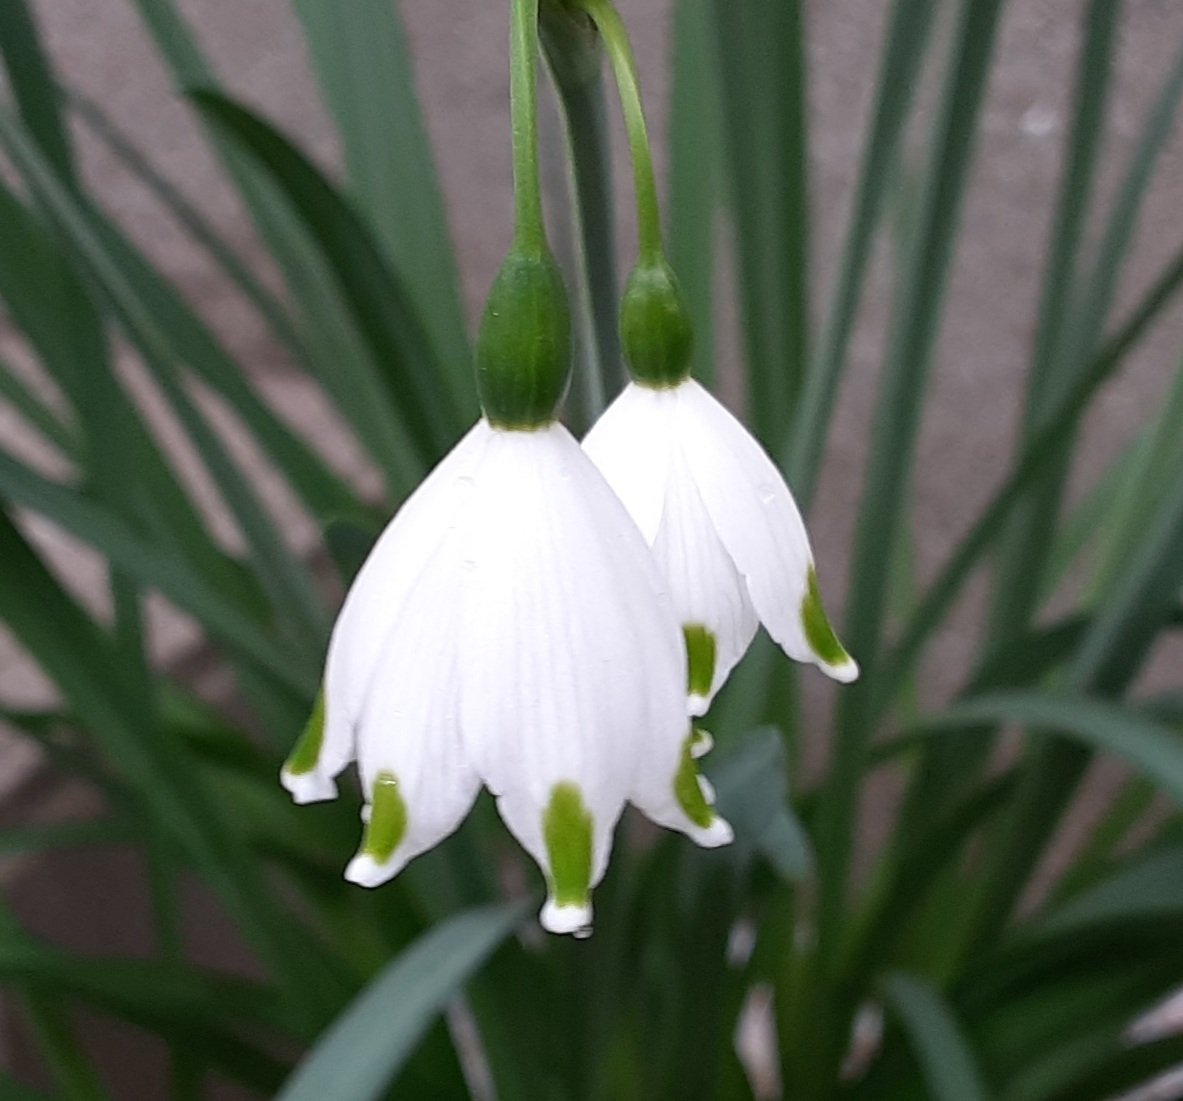 タッピ A Twitter 我が家の北玄関に植えてある 花が すずらん に似てる スノーフレーク またの名を鈴蘭水仙 この小さな白い花が なつかしい 故郷の雪解け風景を 思い起こさせててくれます 𓍯 T Co Glkejrqdl0 Twitter